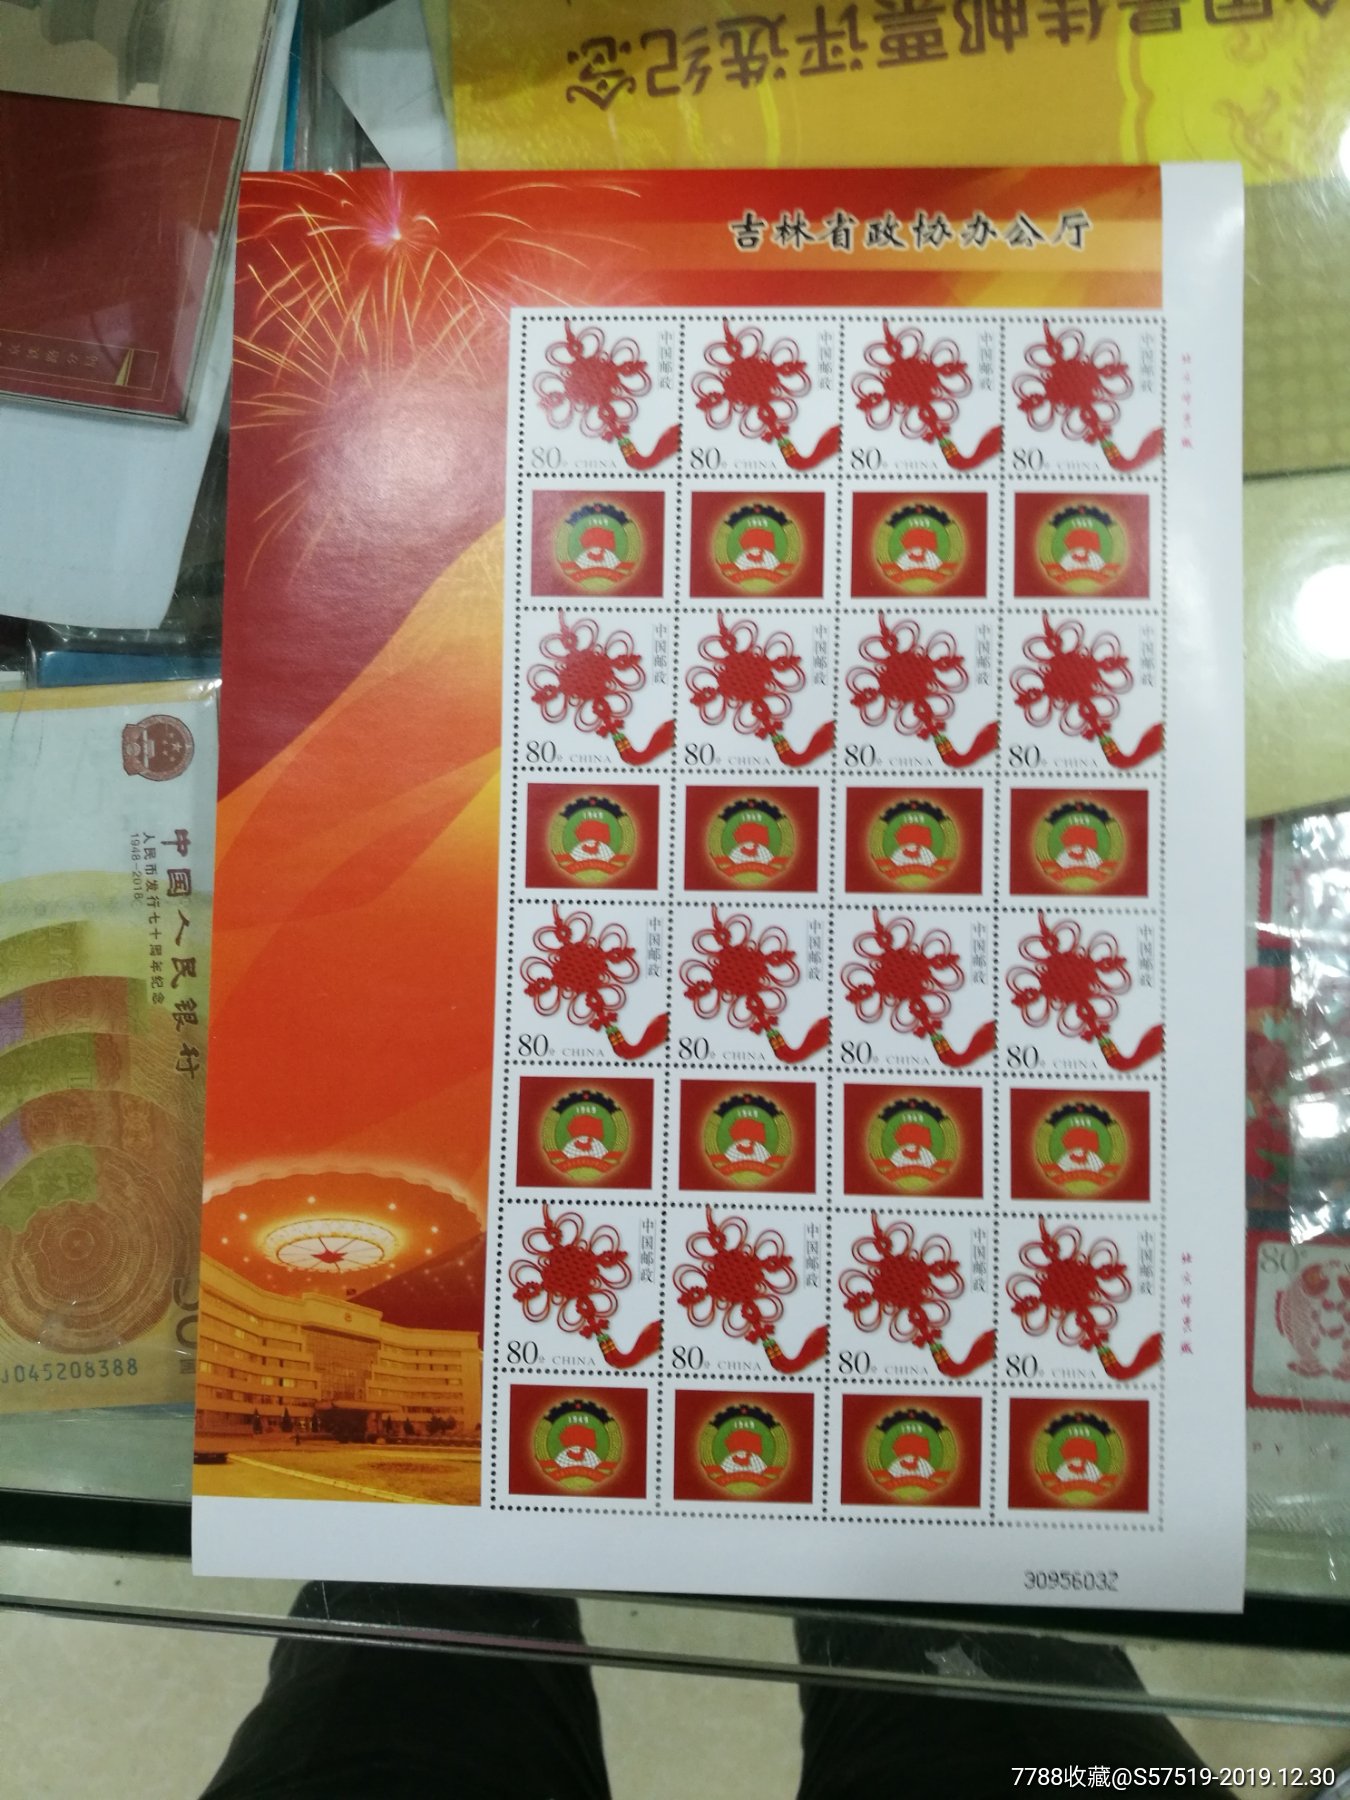 个54个性化邮票图片